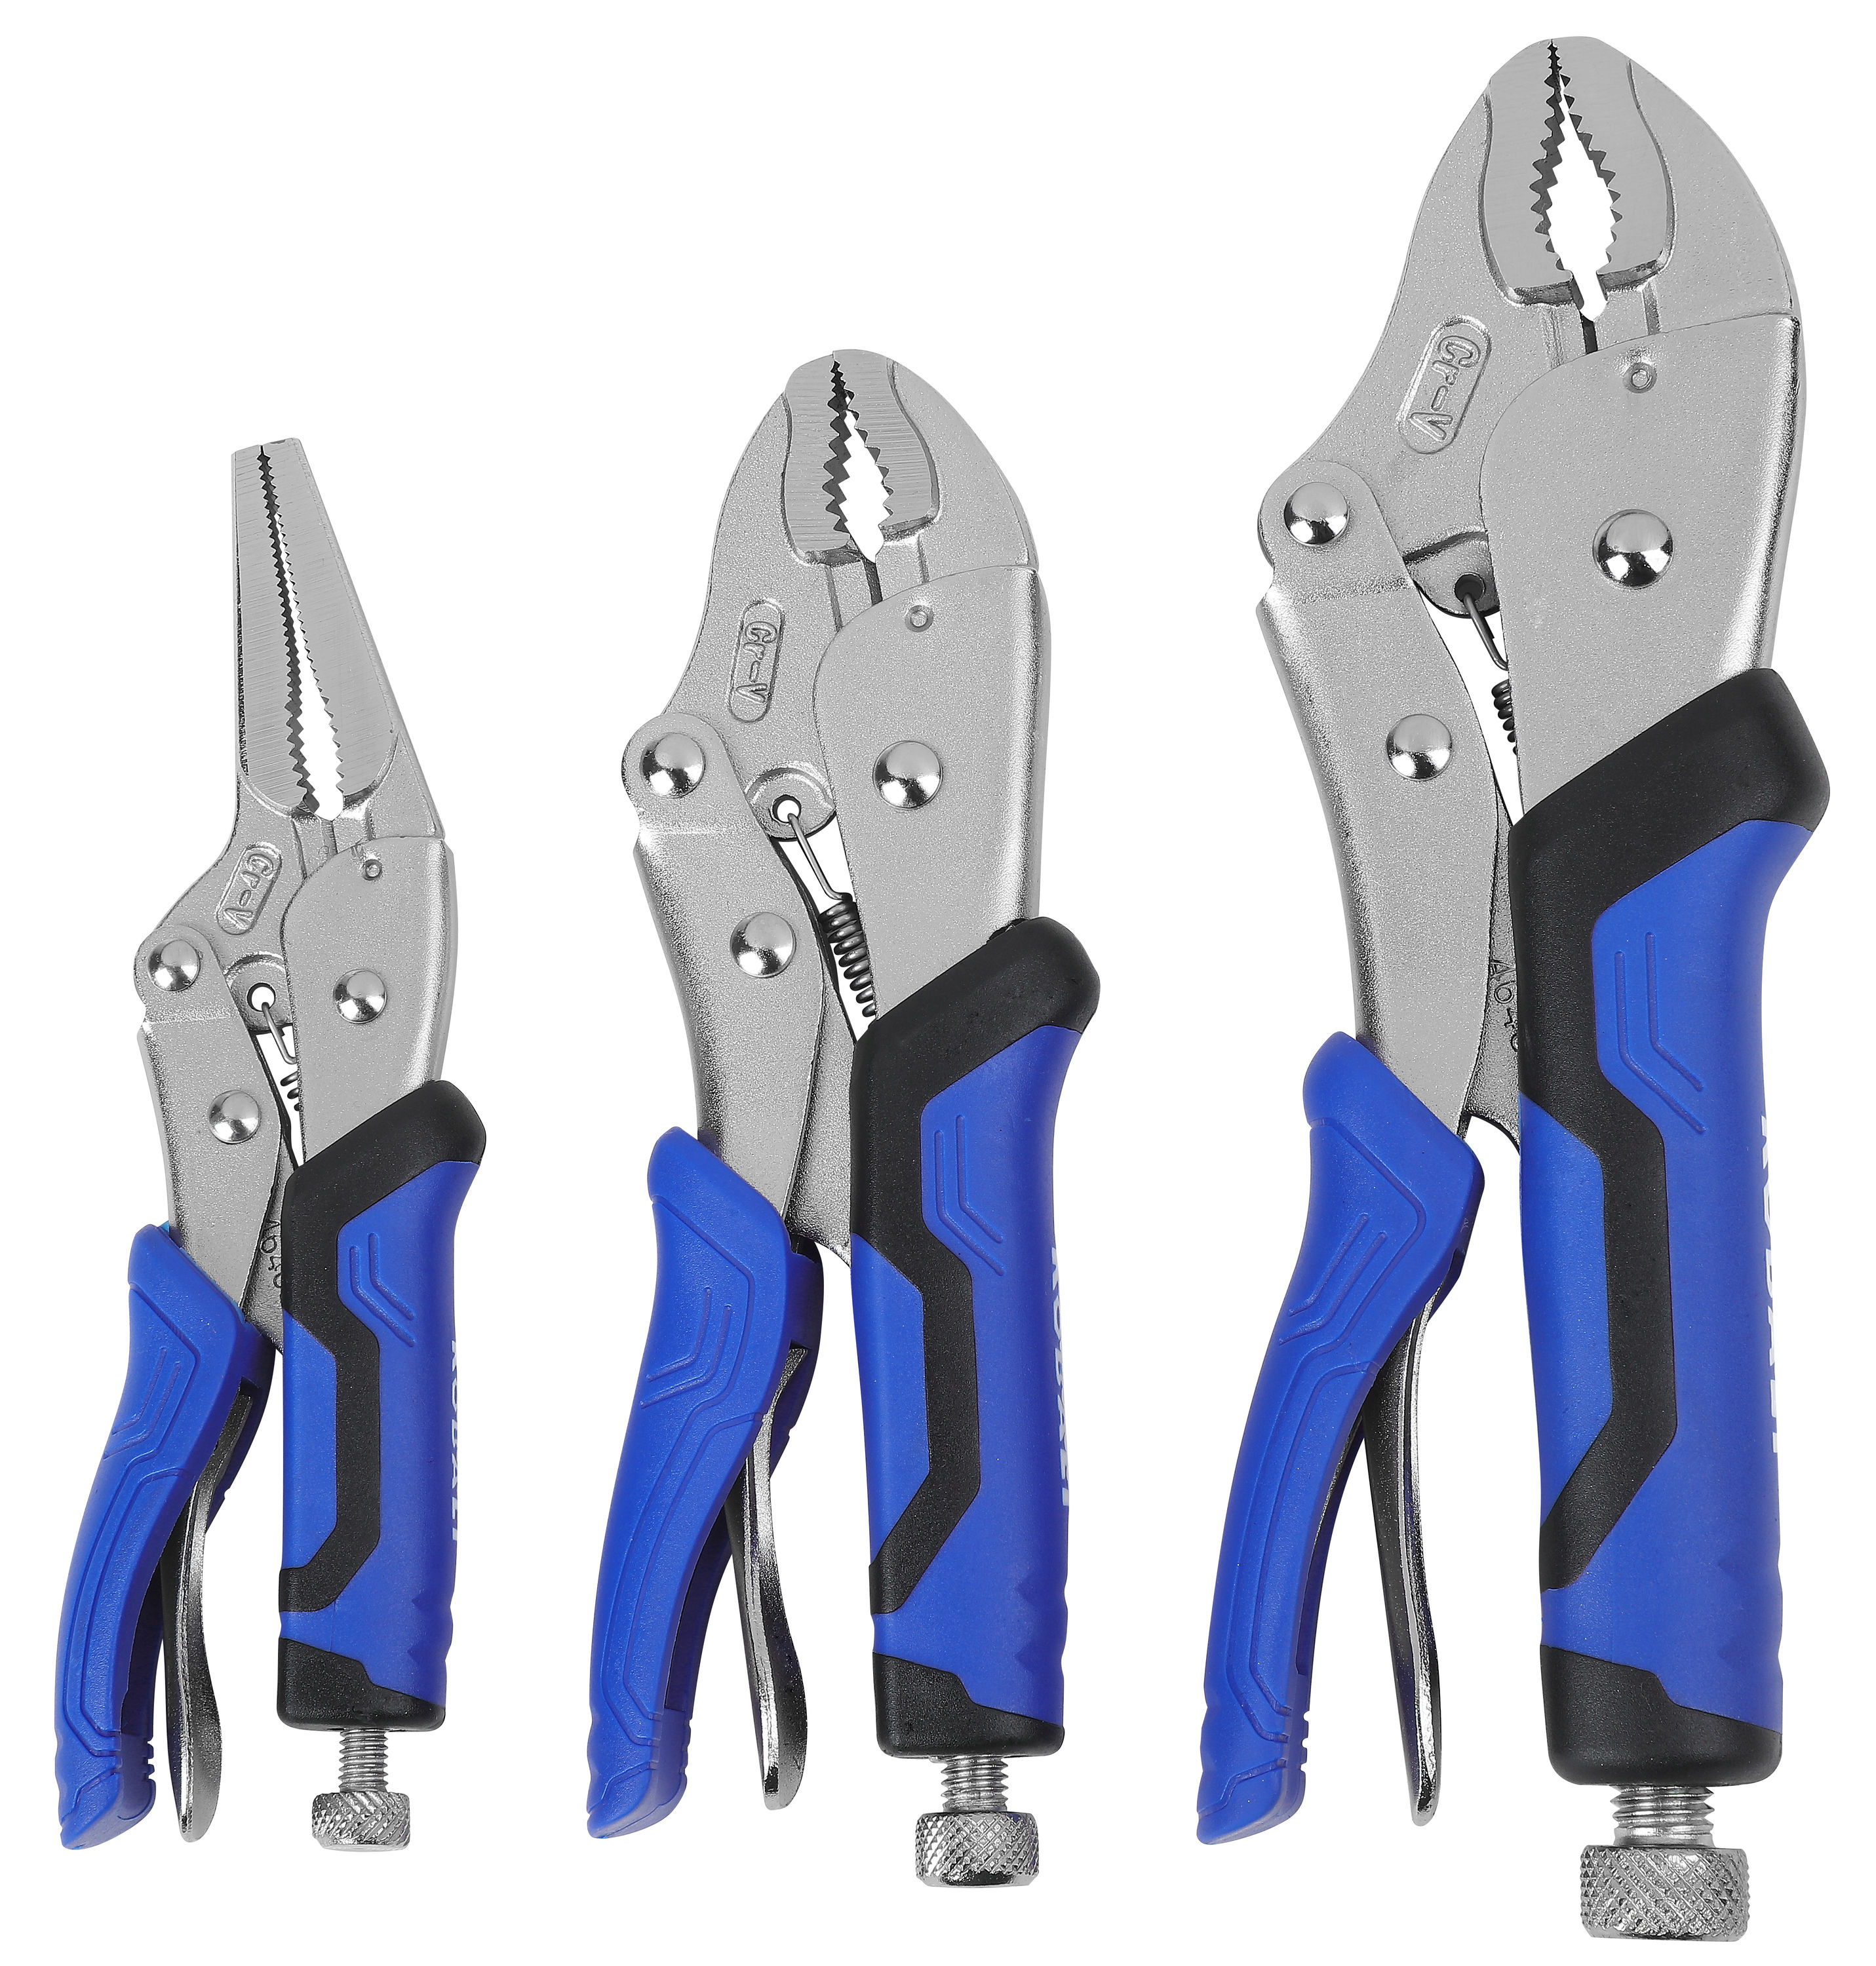 Kobalt 3-Pack Locking Plier Set in the Plier Sets department at